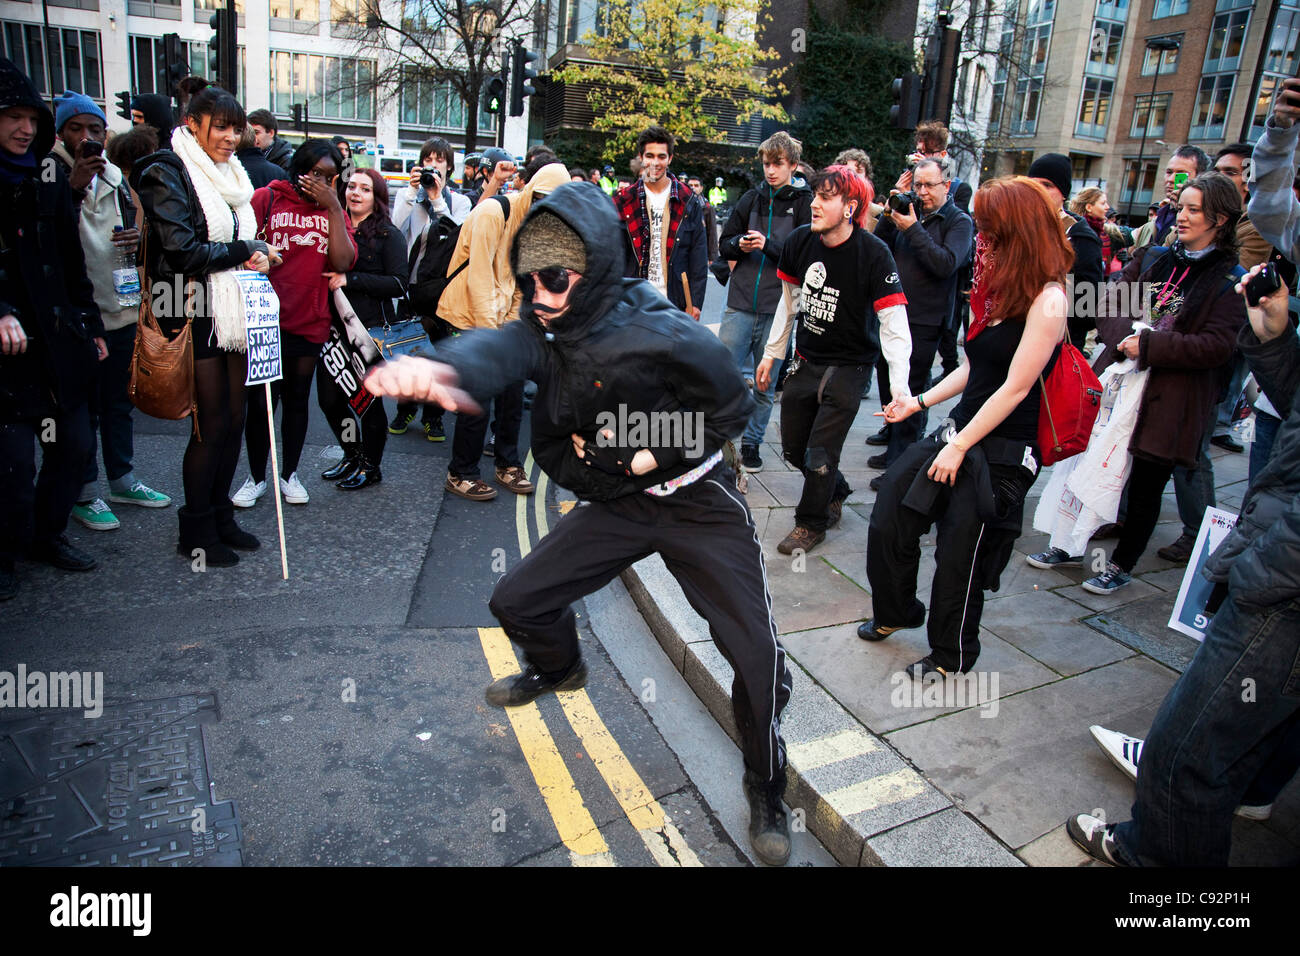 Au cours de danse anarchistes mars étudiant à travers le centre de Londres pour protester contre les hausses des frais de scolarité et les changements à l'enseignement supérieur. La police était en vigueur comme des milliers d'étudiants ont défilé dans le centre de Londres. Quelque 4 000 policiers étaient en service, que les manifestants ont défilé pacifiquement dans un pr Banque D'Images